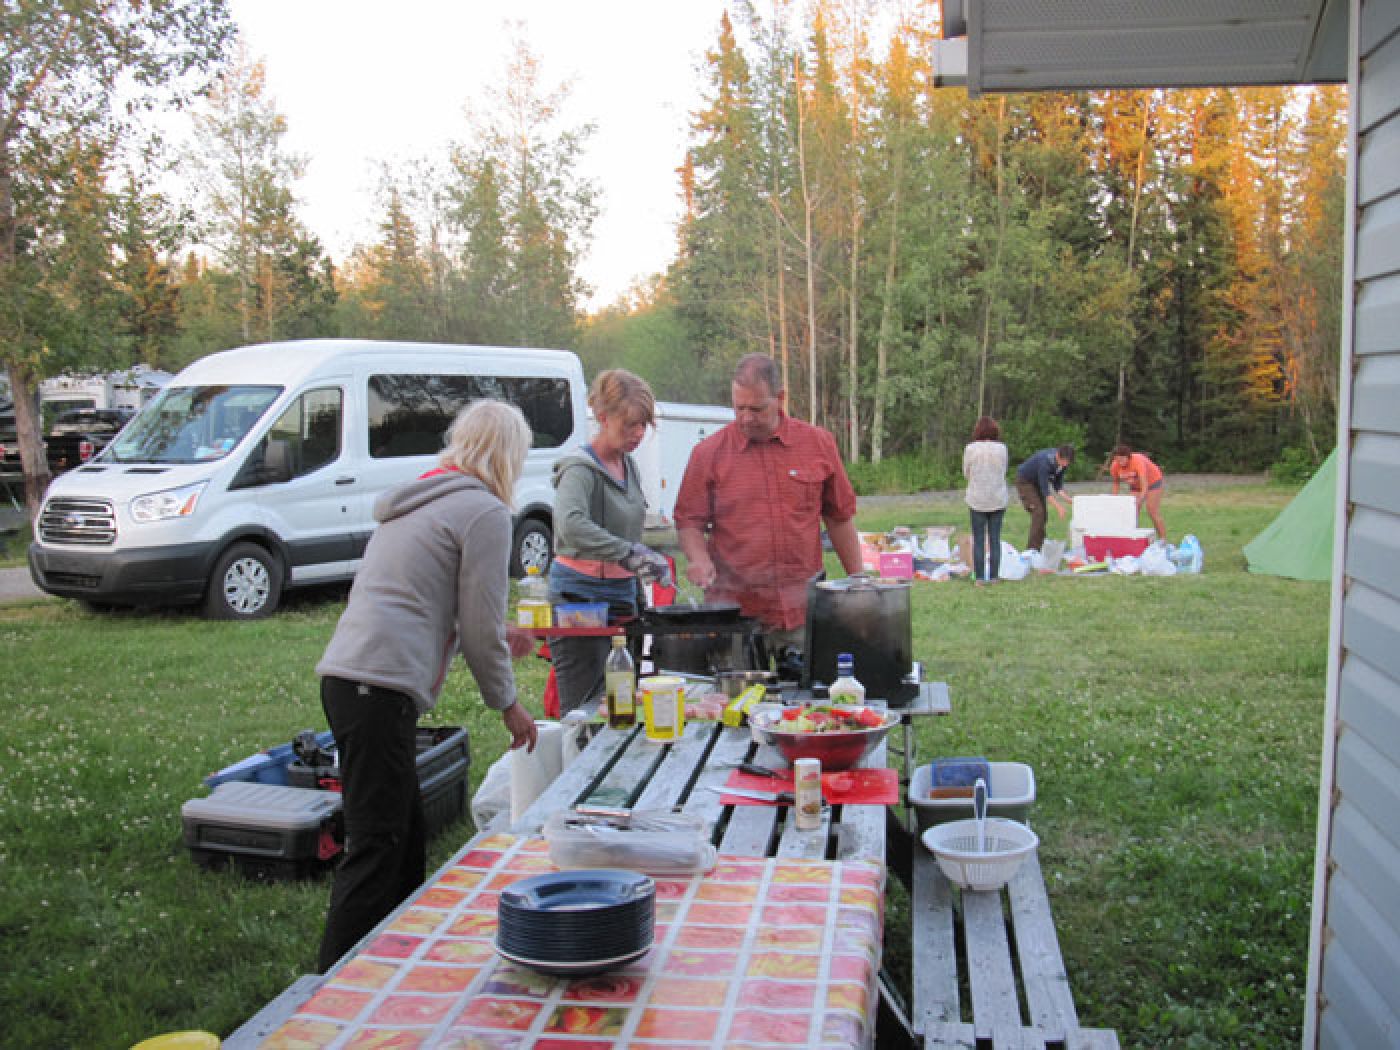 kitchen table at campingtour in canadian rockies | kochen bei der campingreise in den kanadischen rockies